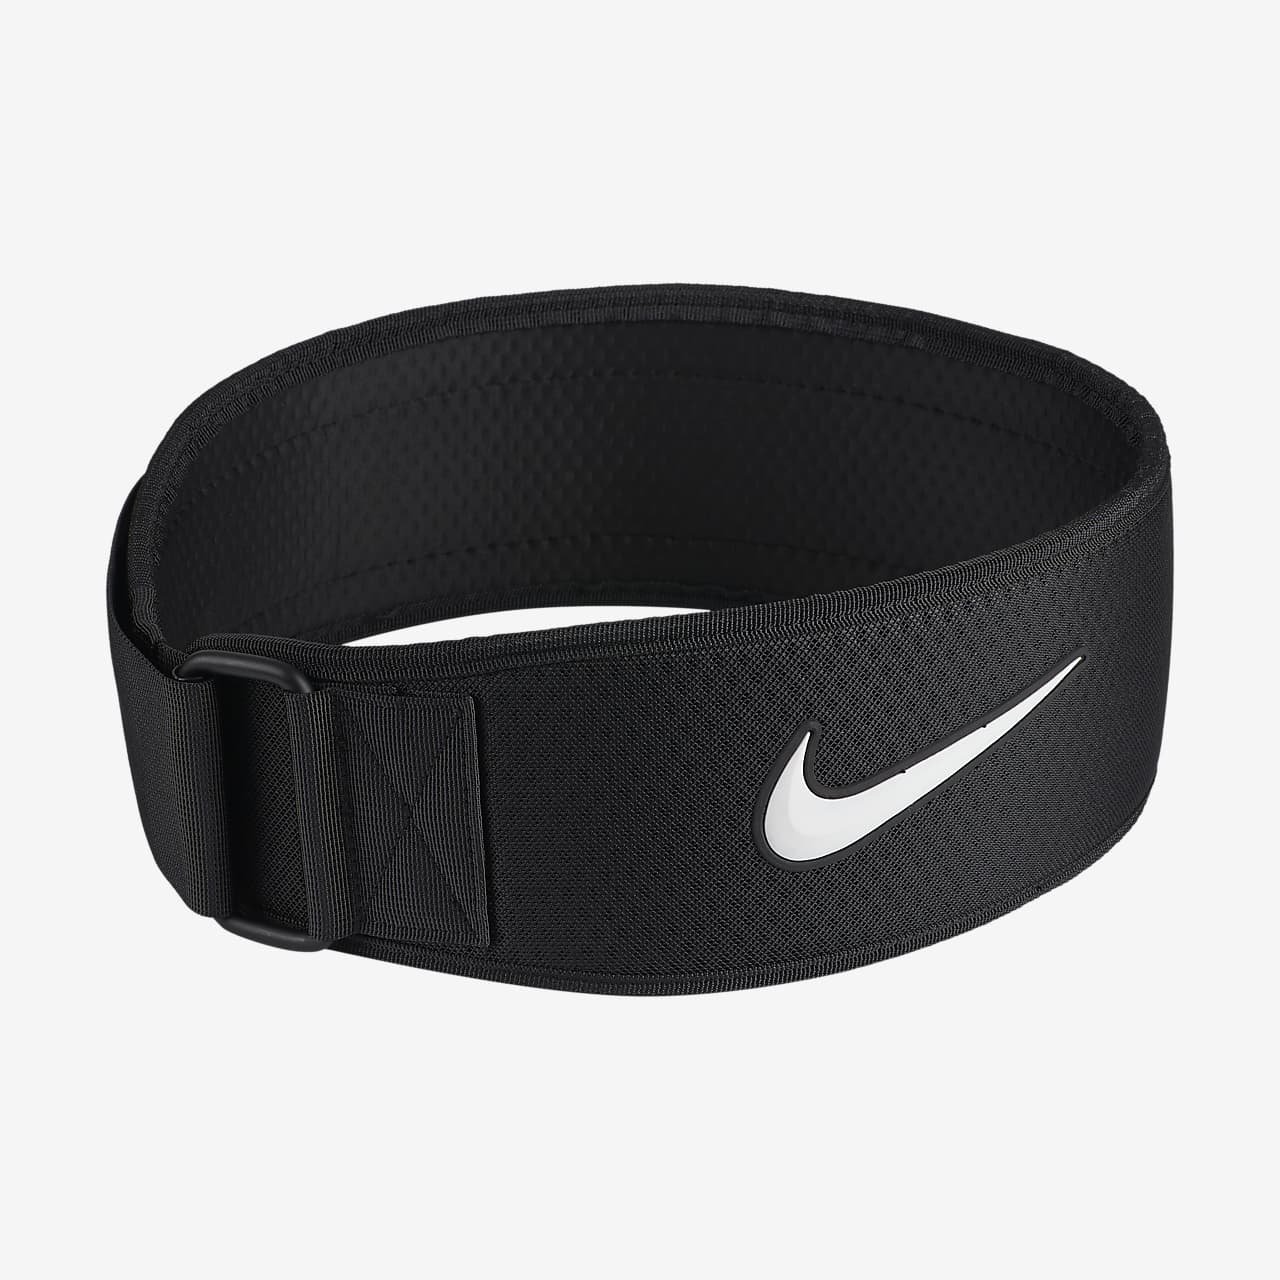 Ανδρική ζώνη προπόνησης Nike Intensity